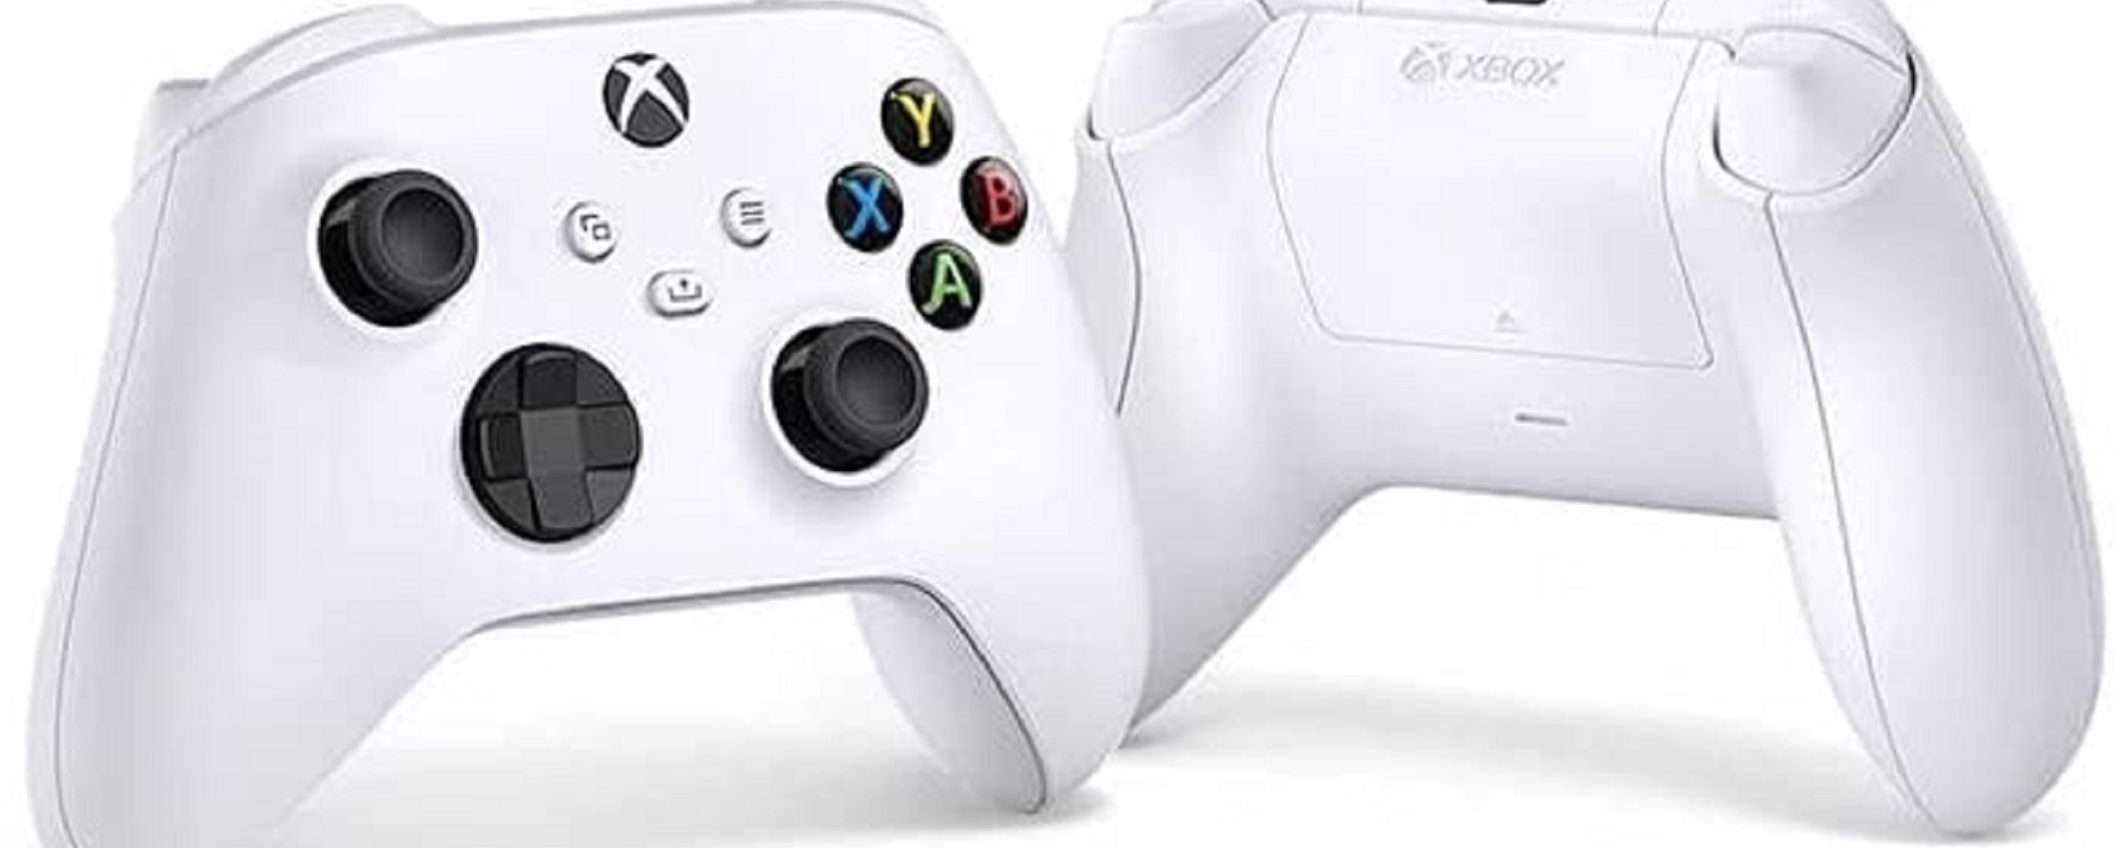 Controller Wireless Xbox White a soli 45€ su Amazon: PREZZO BOMBA!